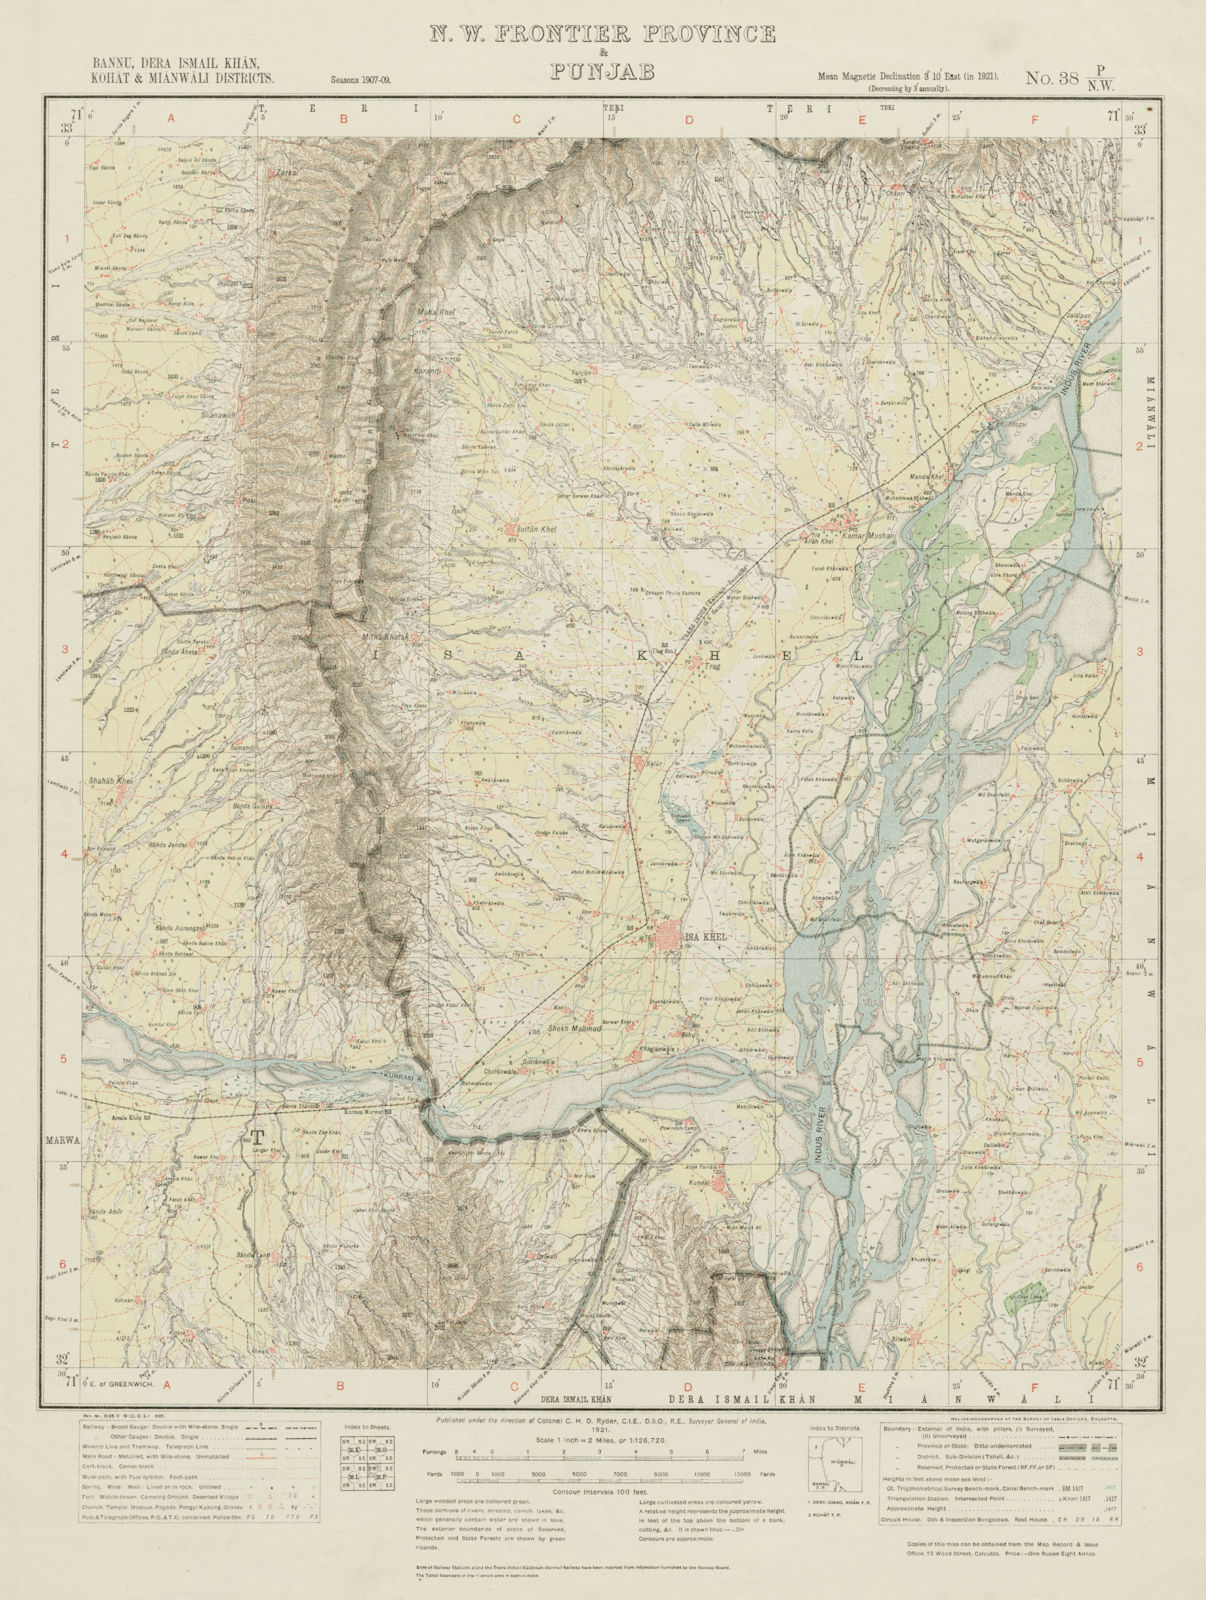 SURVEY OF INDIA 38 P/NW Pakistan Punjab Kamar Mushani Isakhel Indus 1921 map